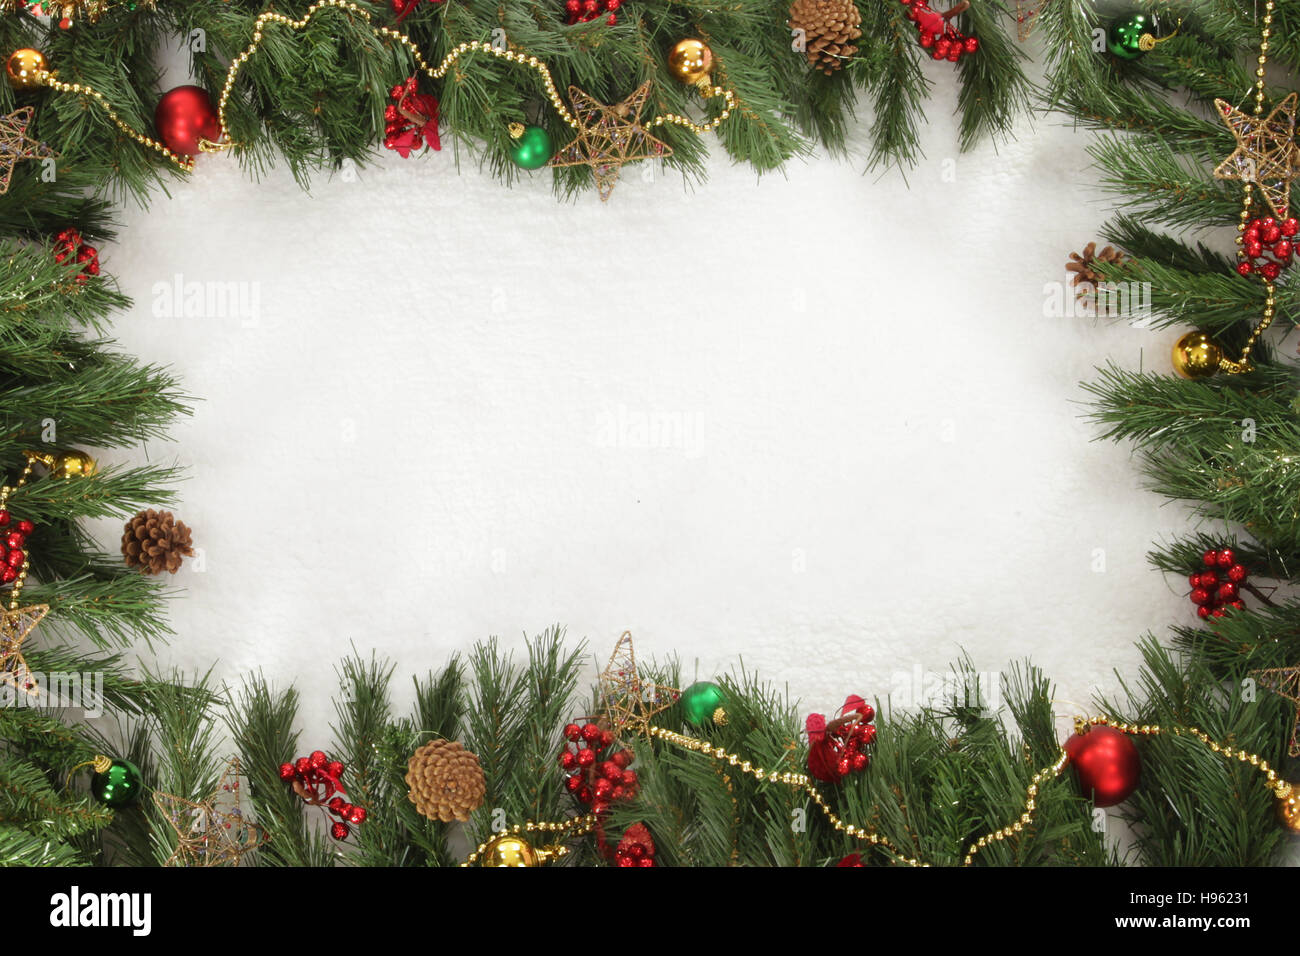 Affichage de noël, fêtes de Noël et de saison, signe de l'espace vide, ajoutez votre texte Banque D'Images